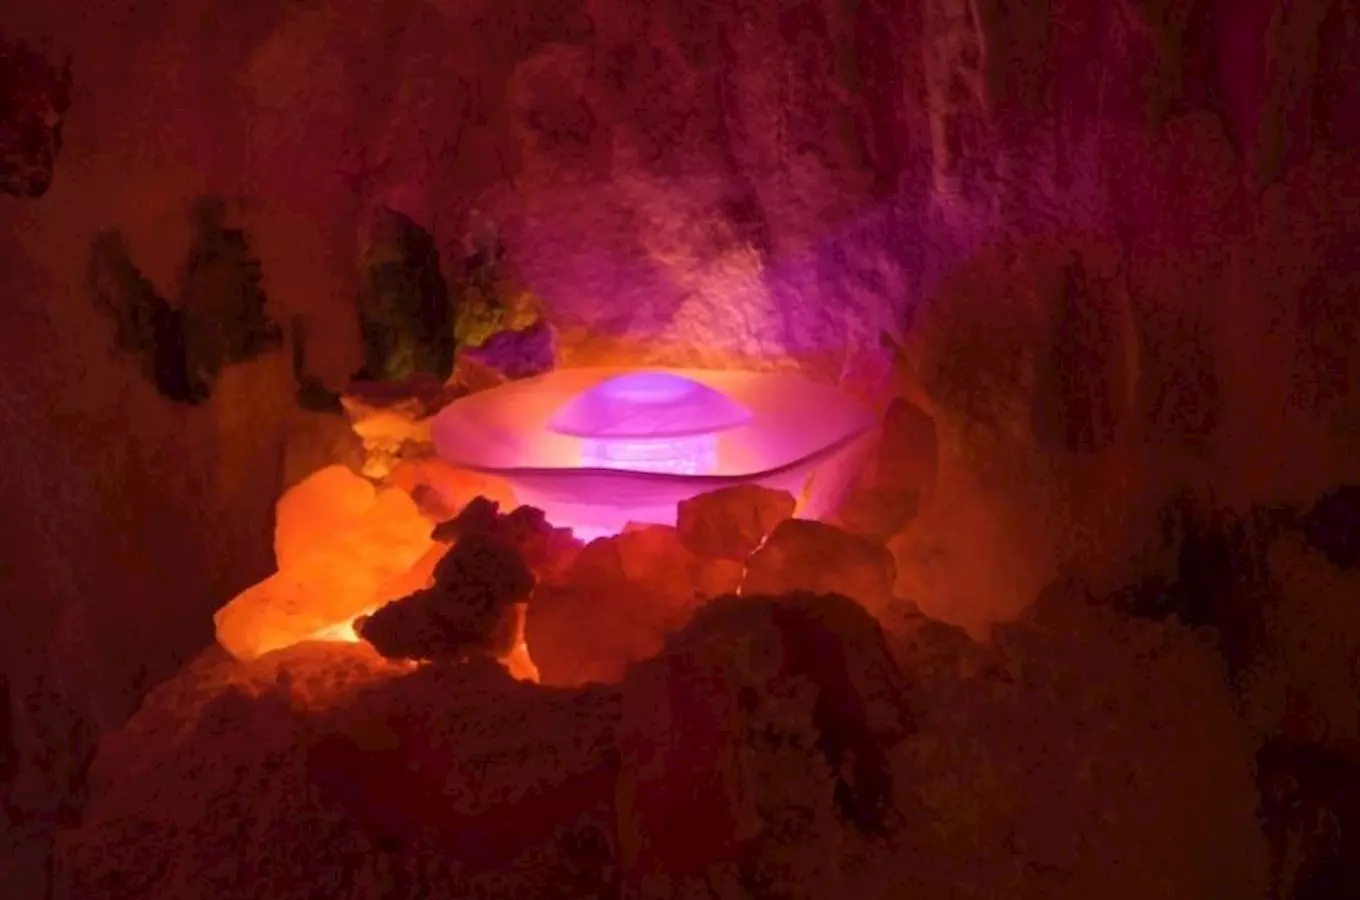 Solná jeskyně Lastura v Přešticích